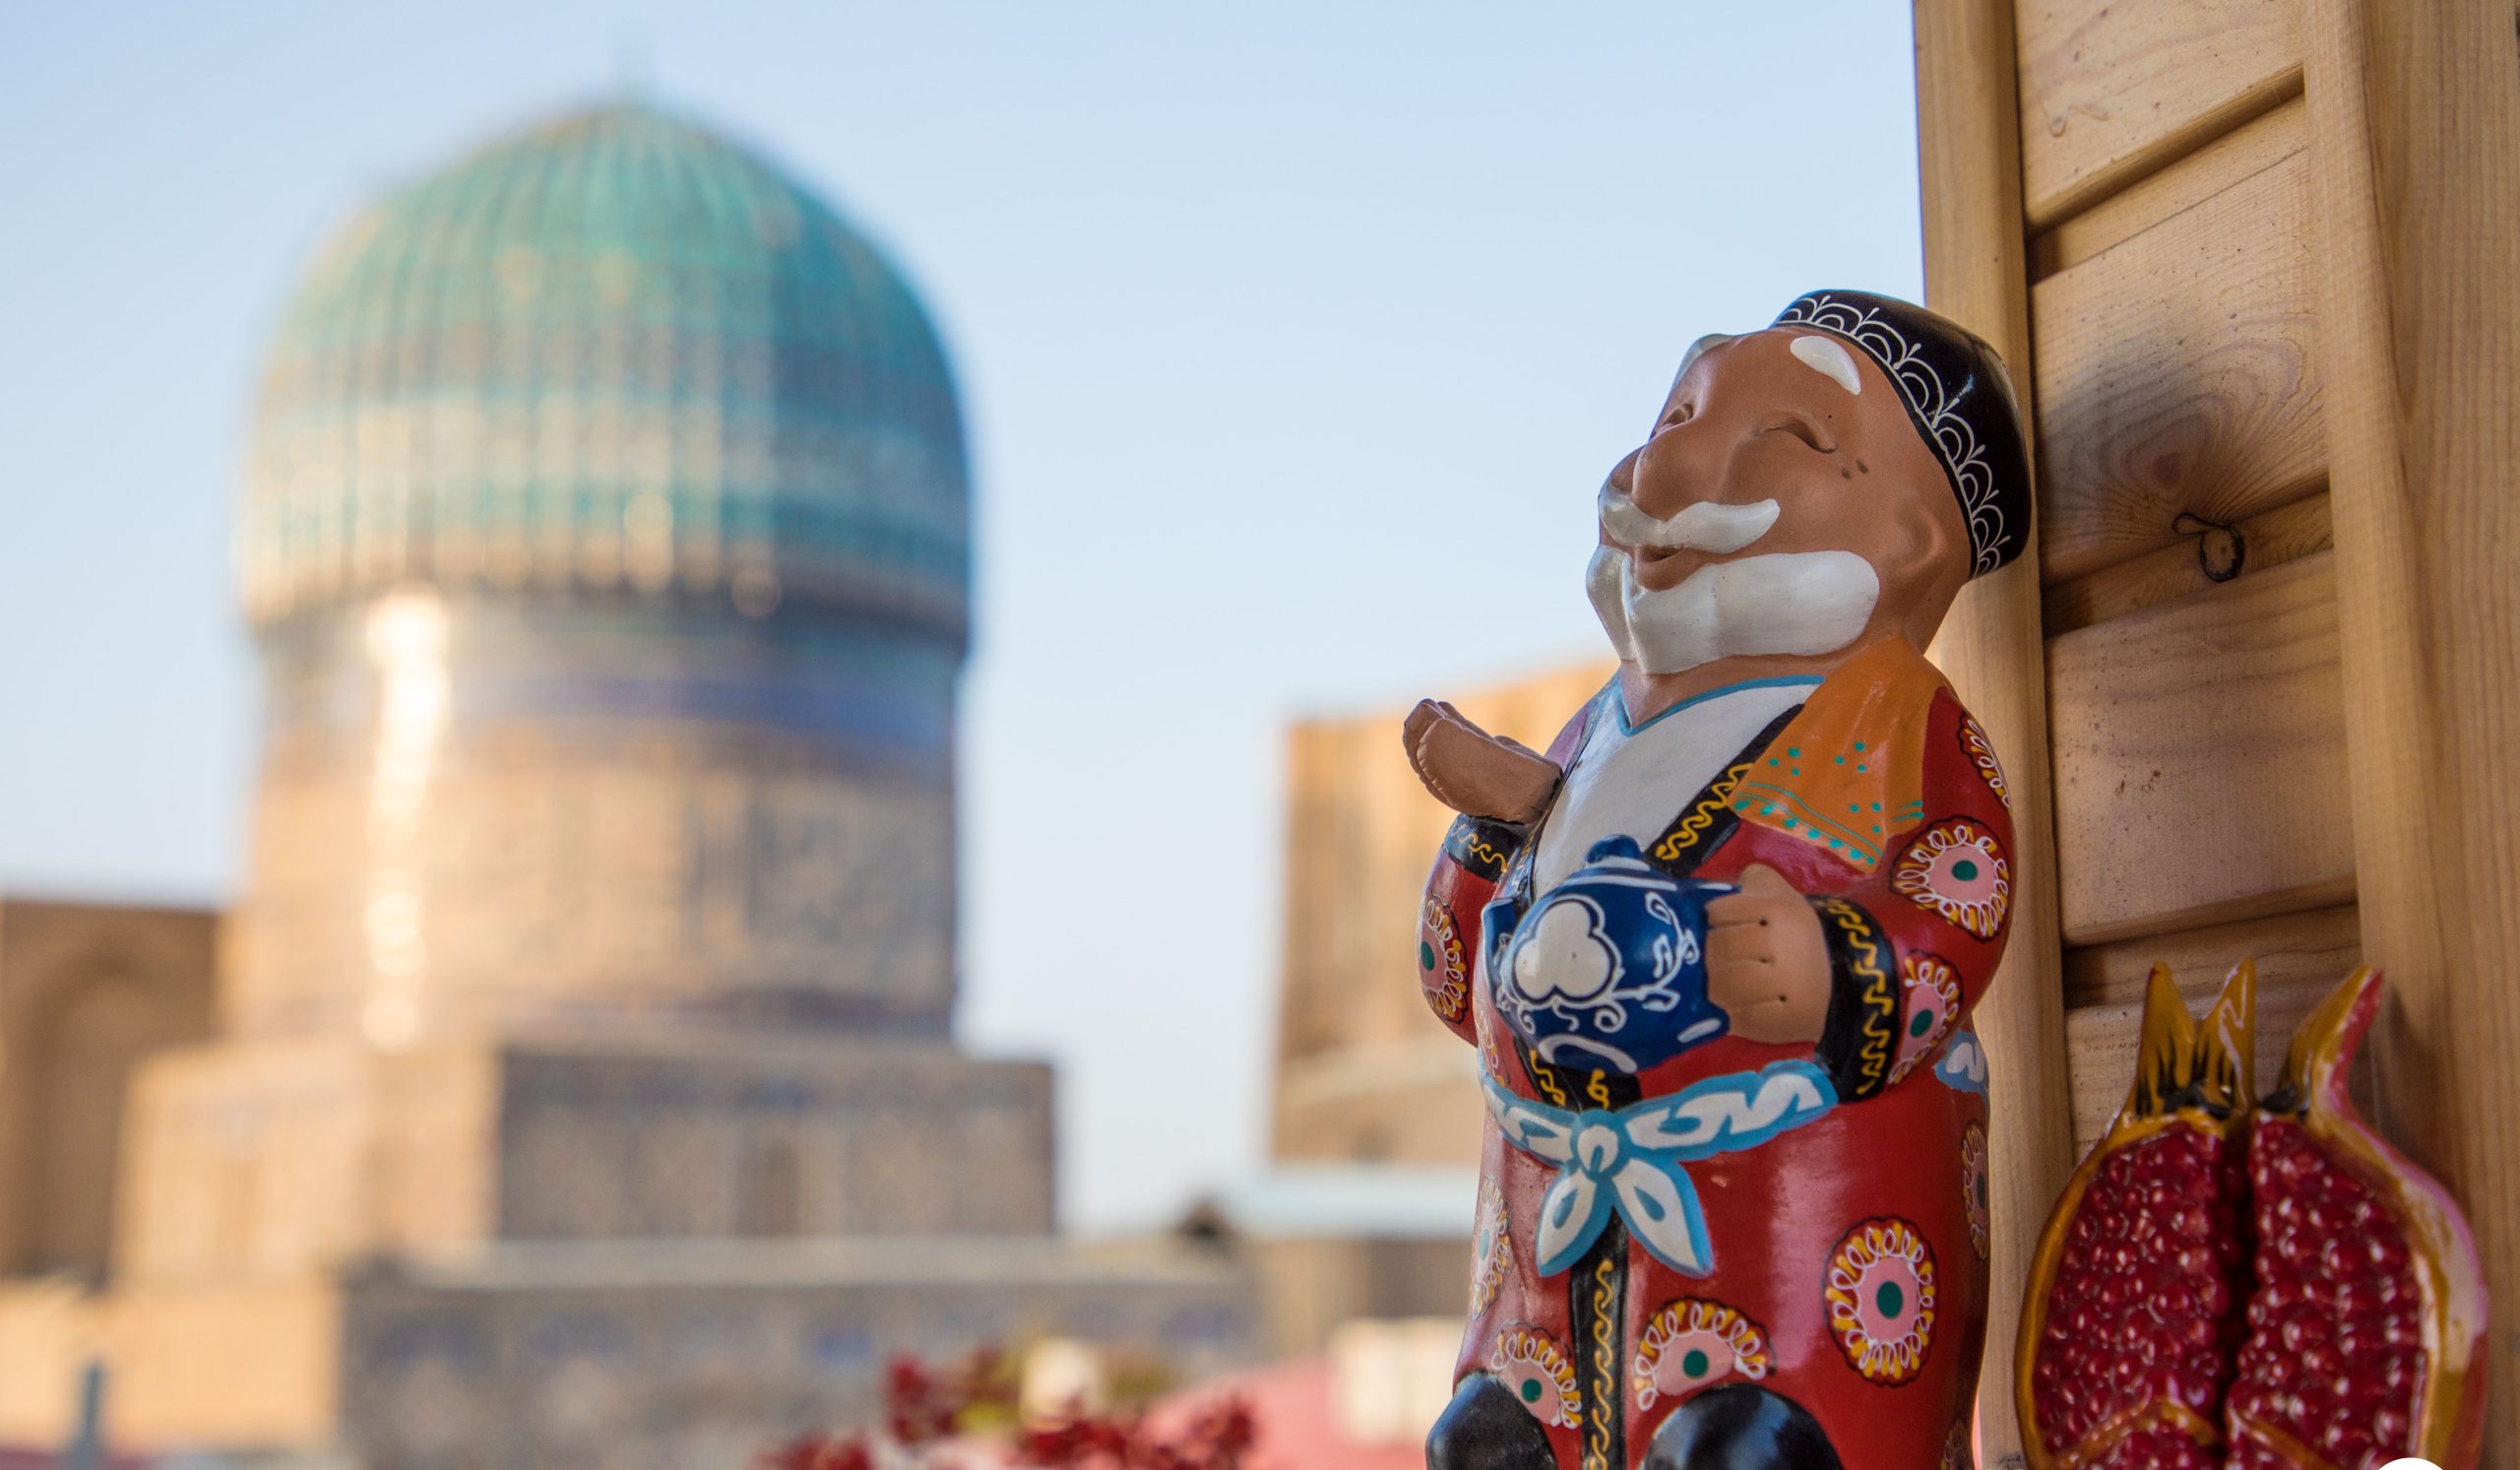 Иностранные туристы стали больше тратить в Узбекистане